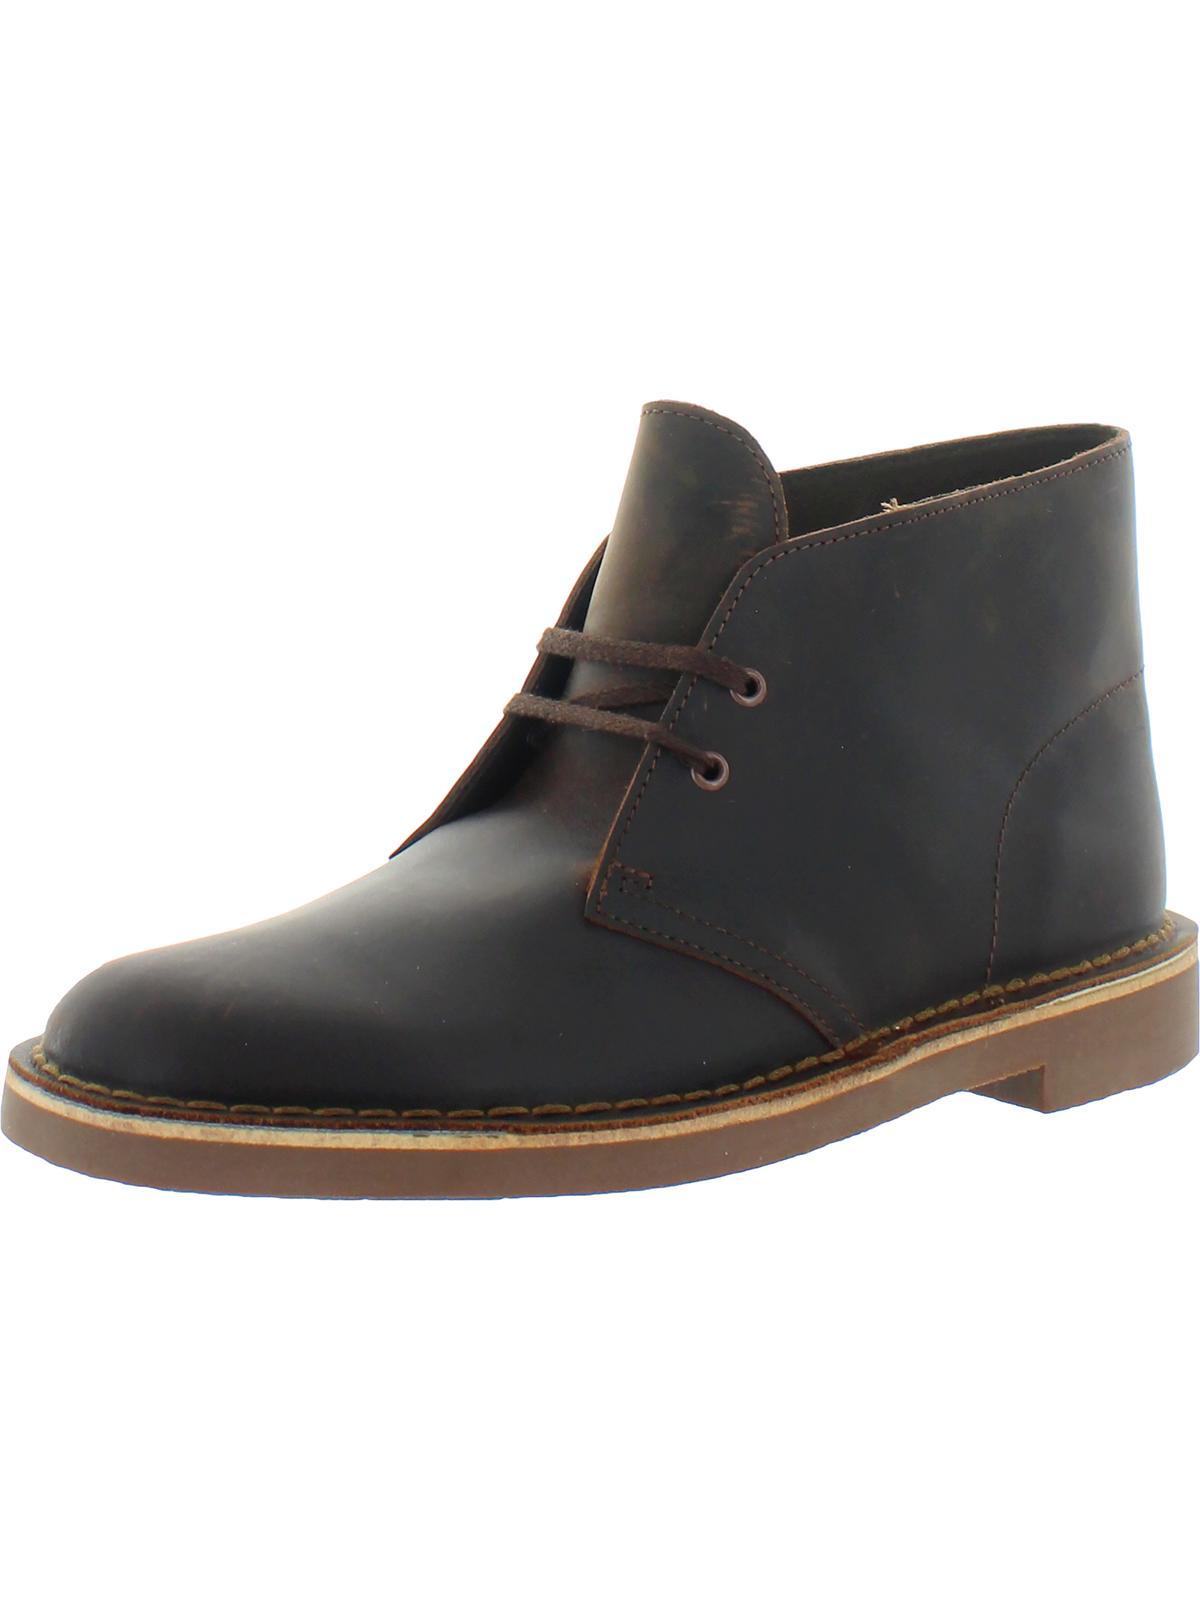 Clarks Bushacre 2 Leather Ankle Desert Boot in Black for Men | Lyst